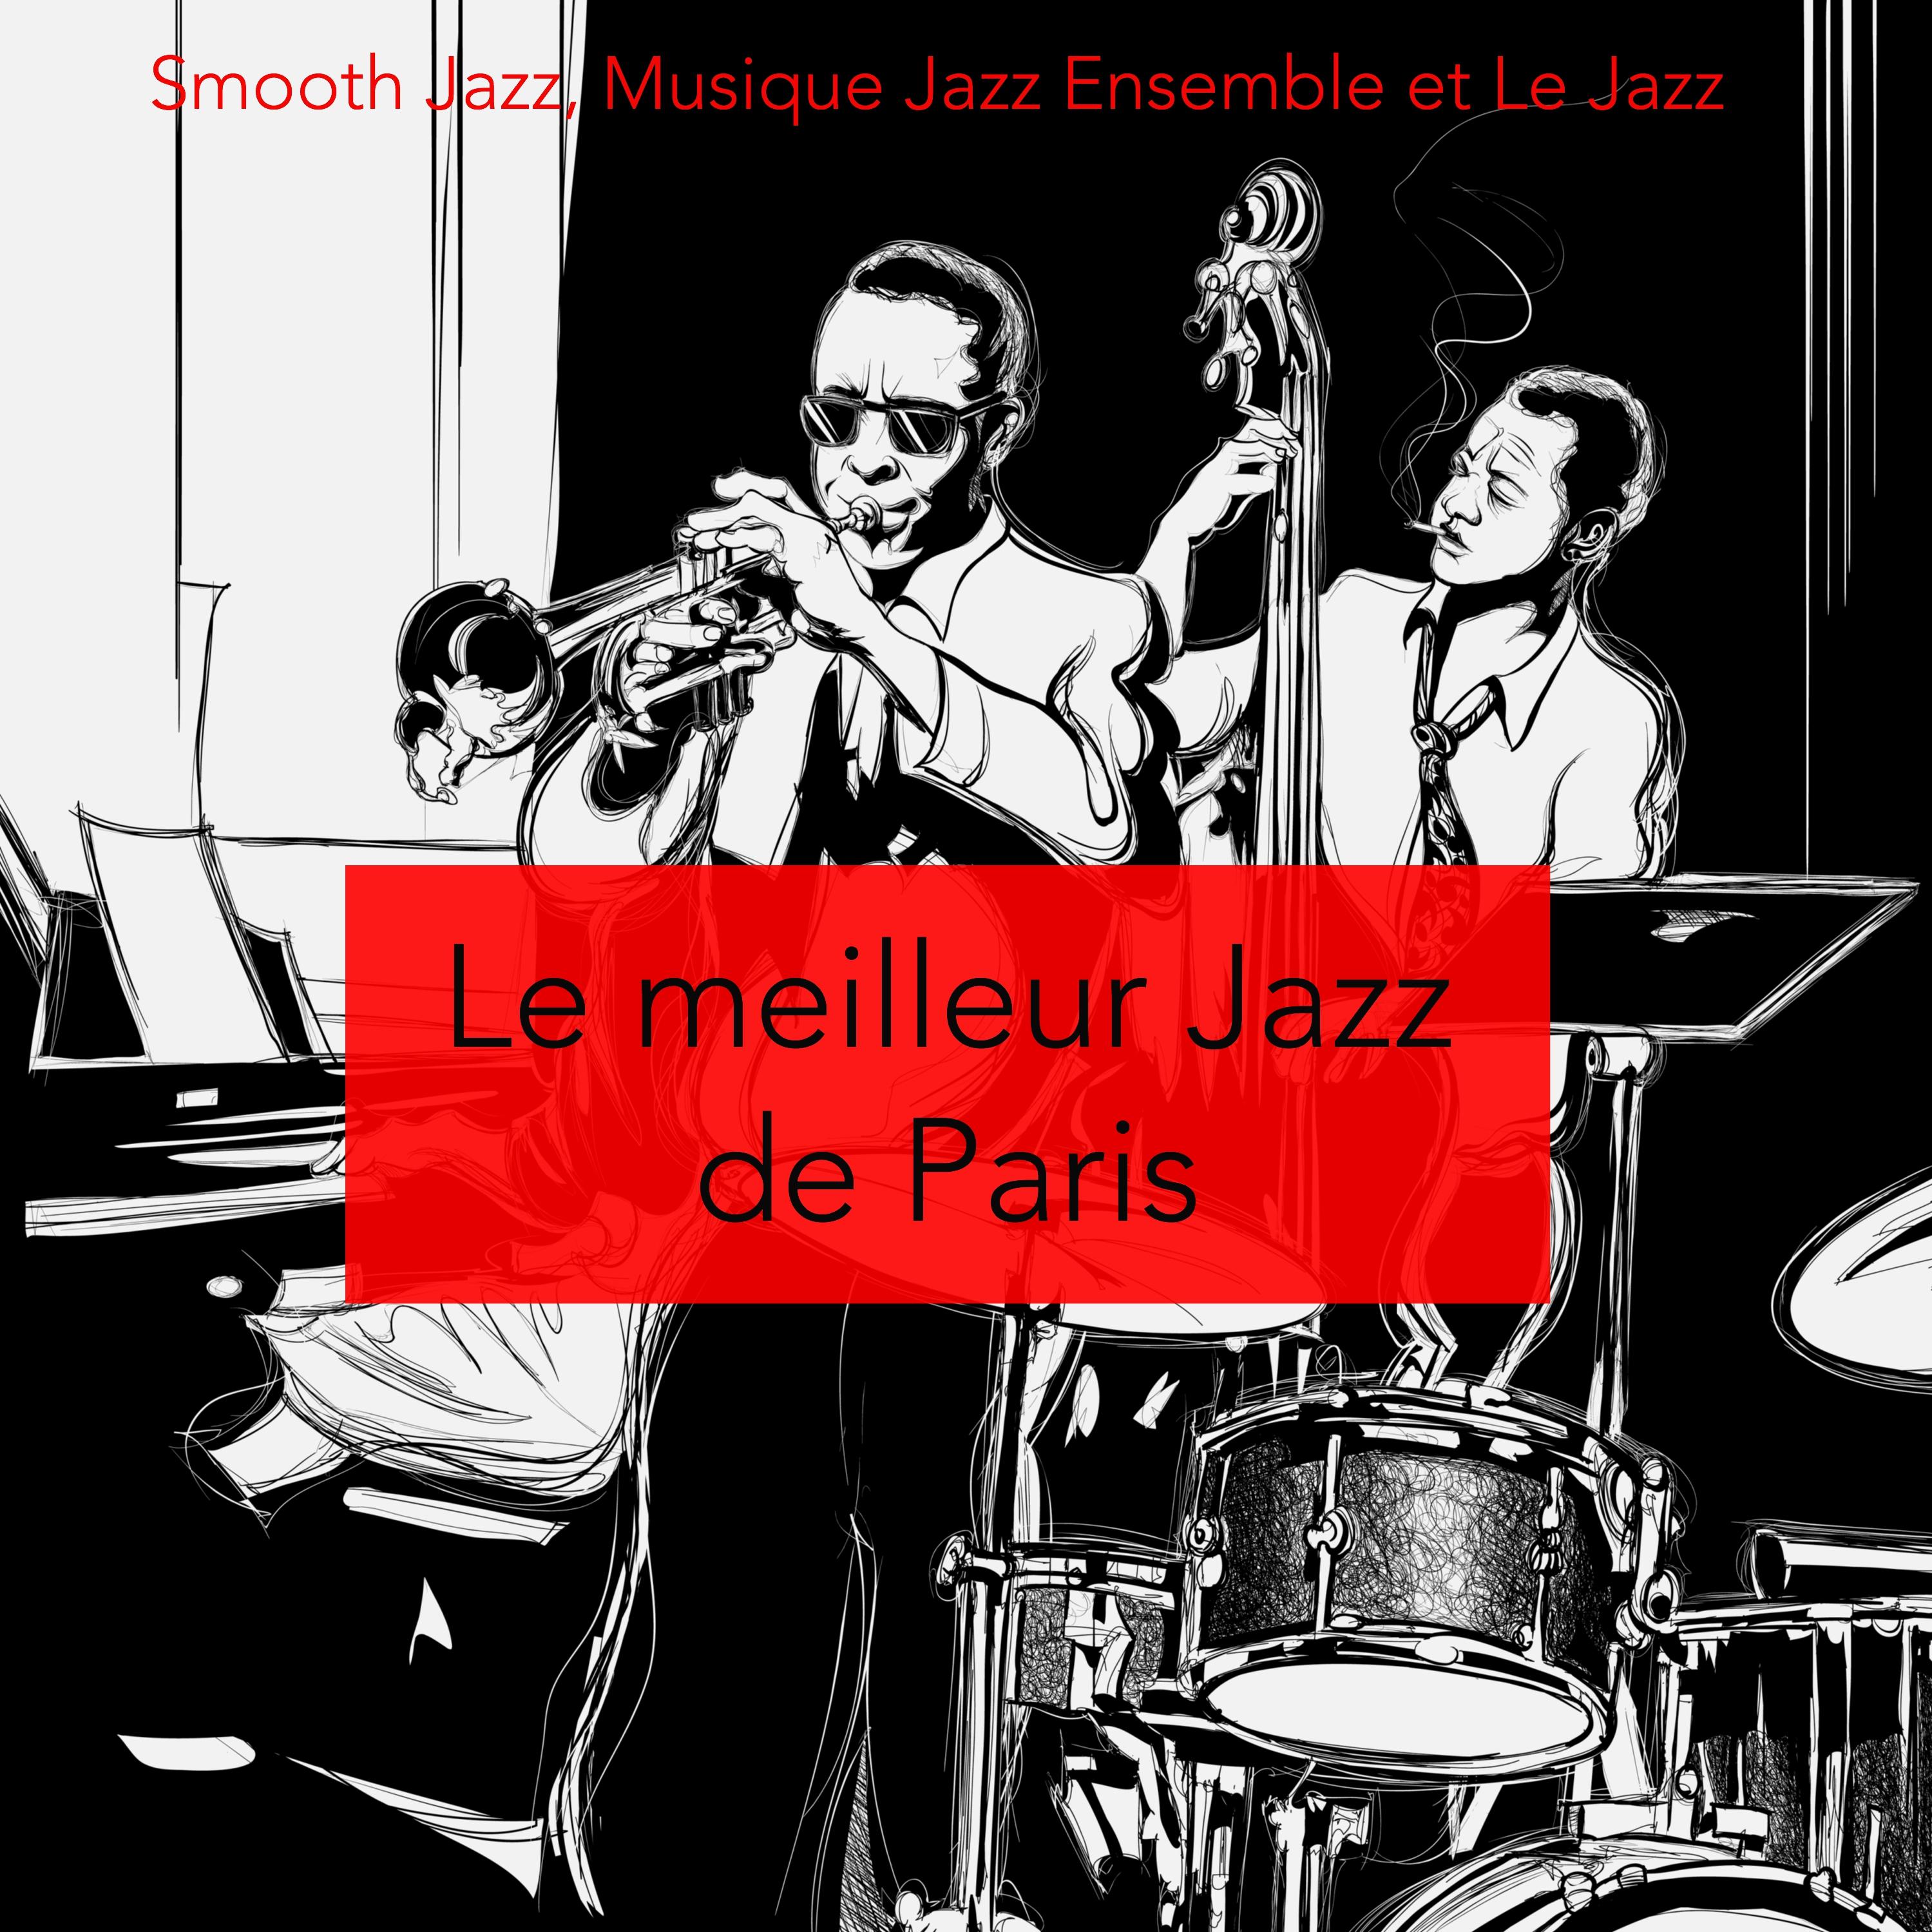 Le meilleur jazz de Paris